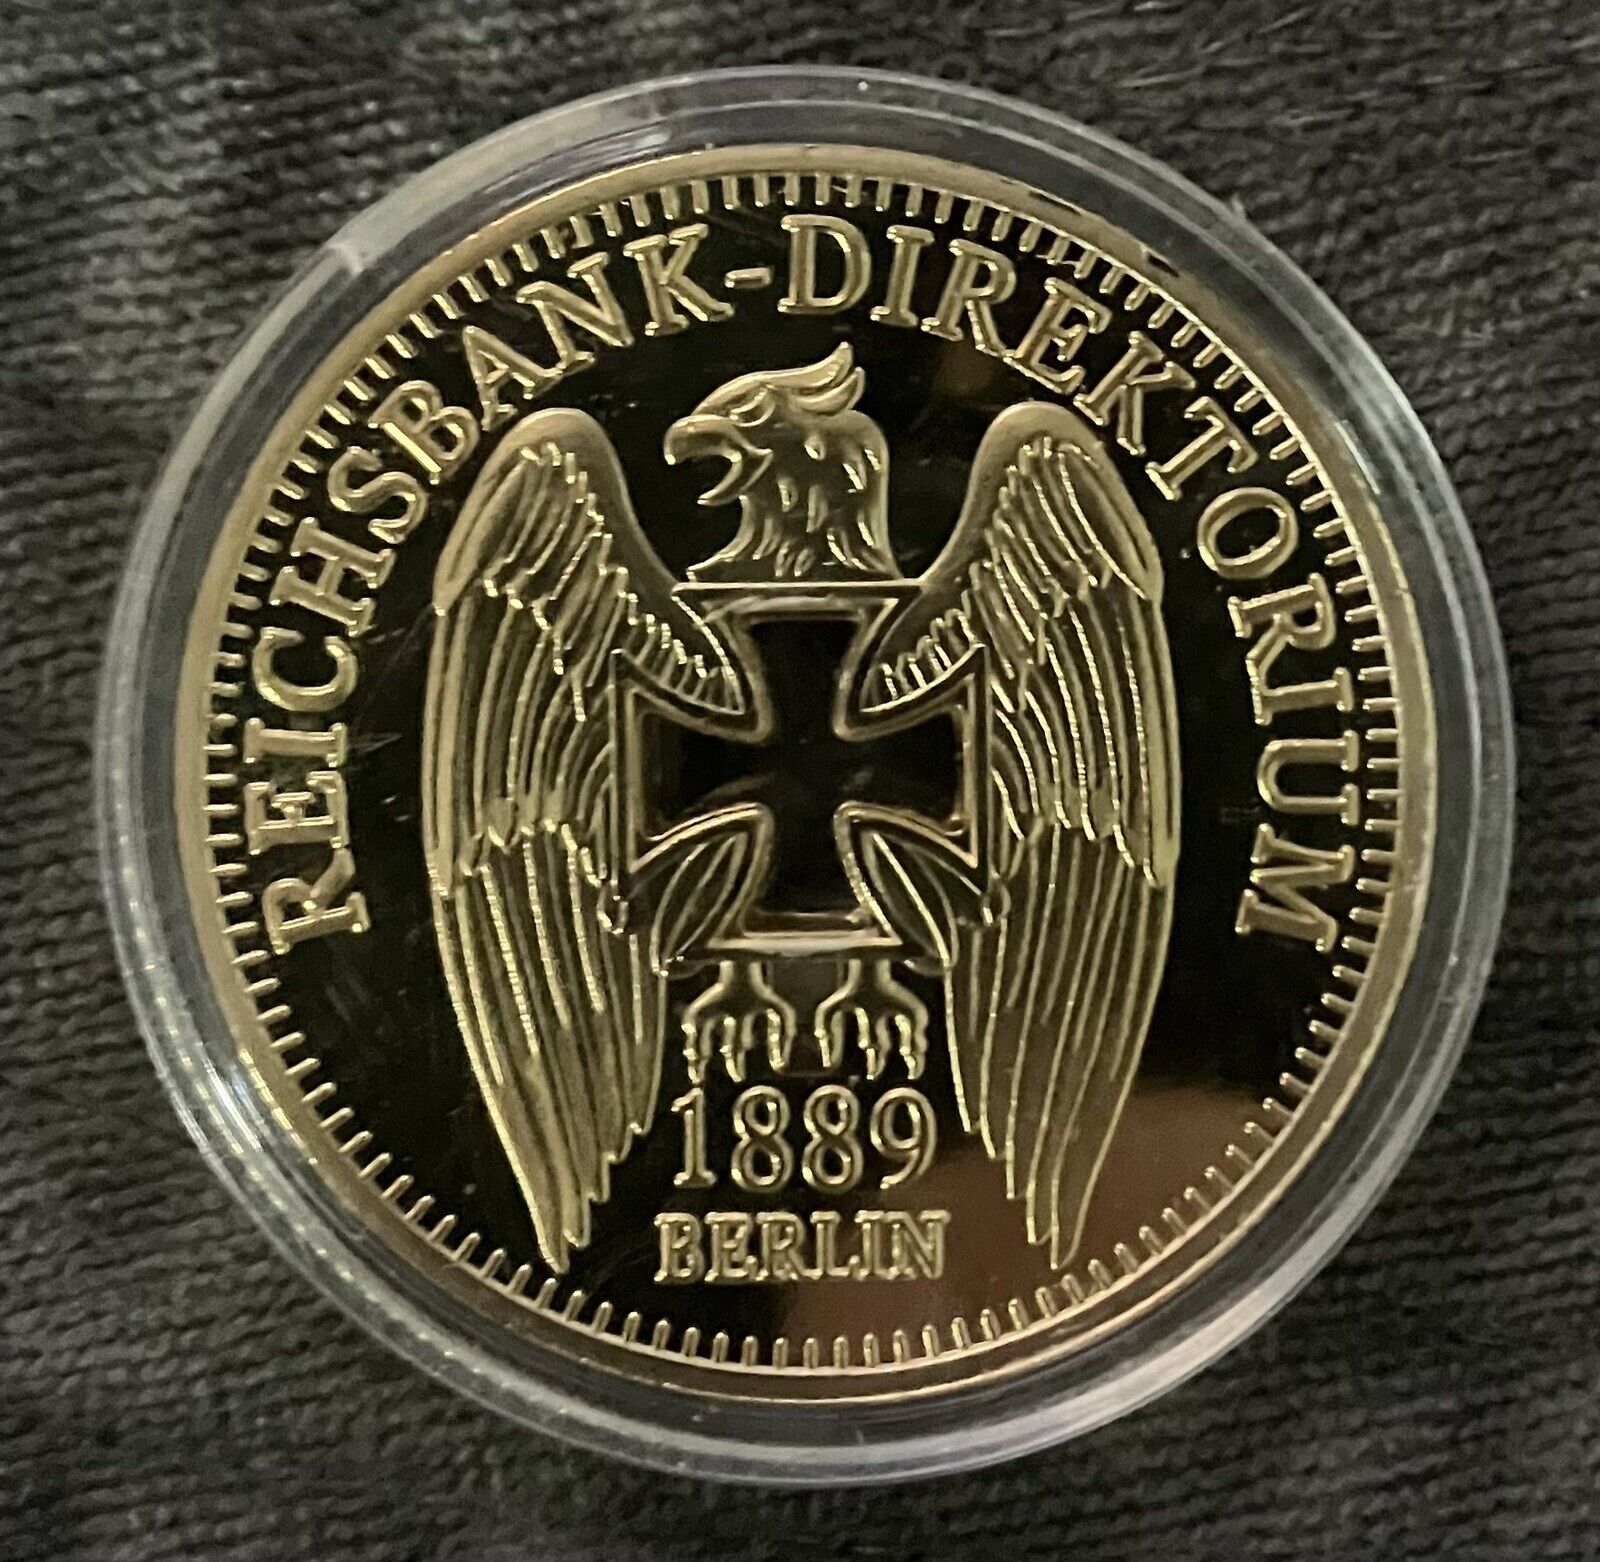 1889 Berlin Reichsbank-Direktorium .999 Gold Clad Coin